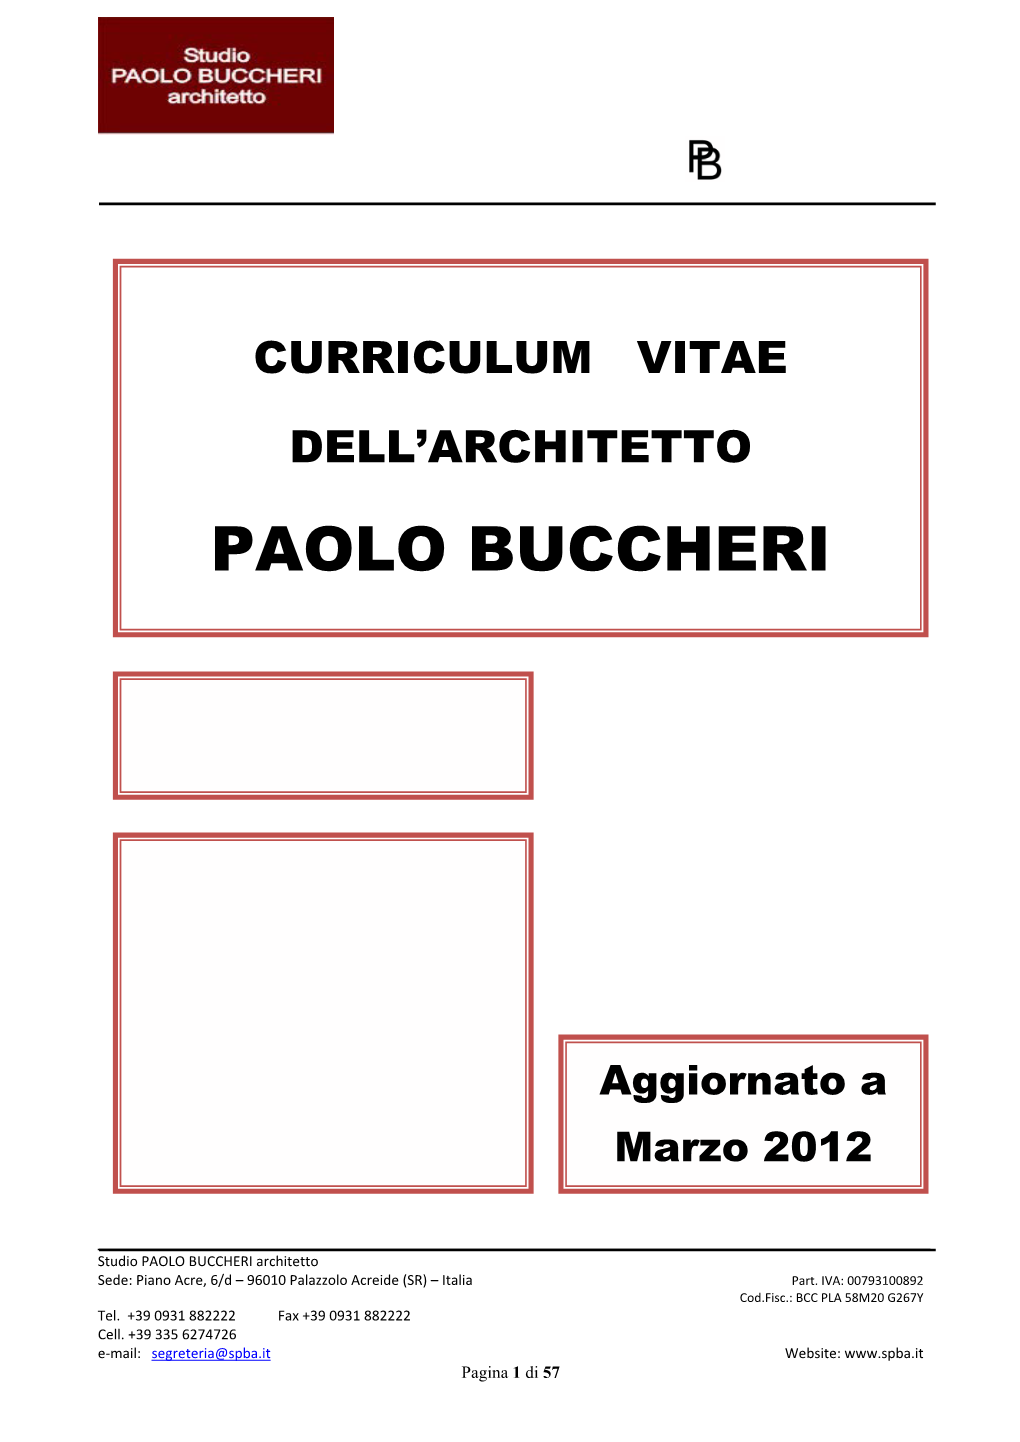 Paolo Buccheri